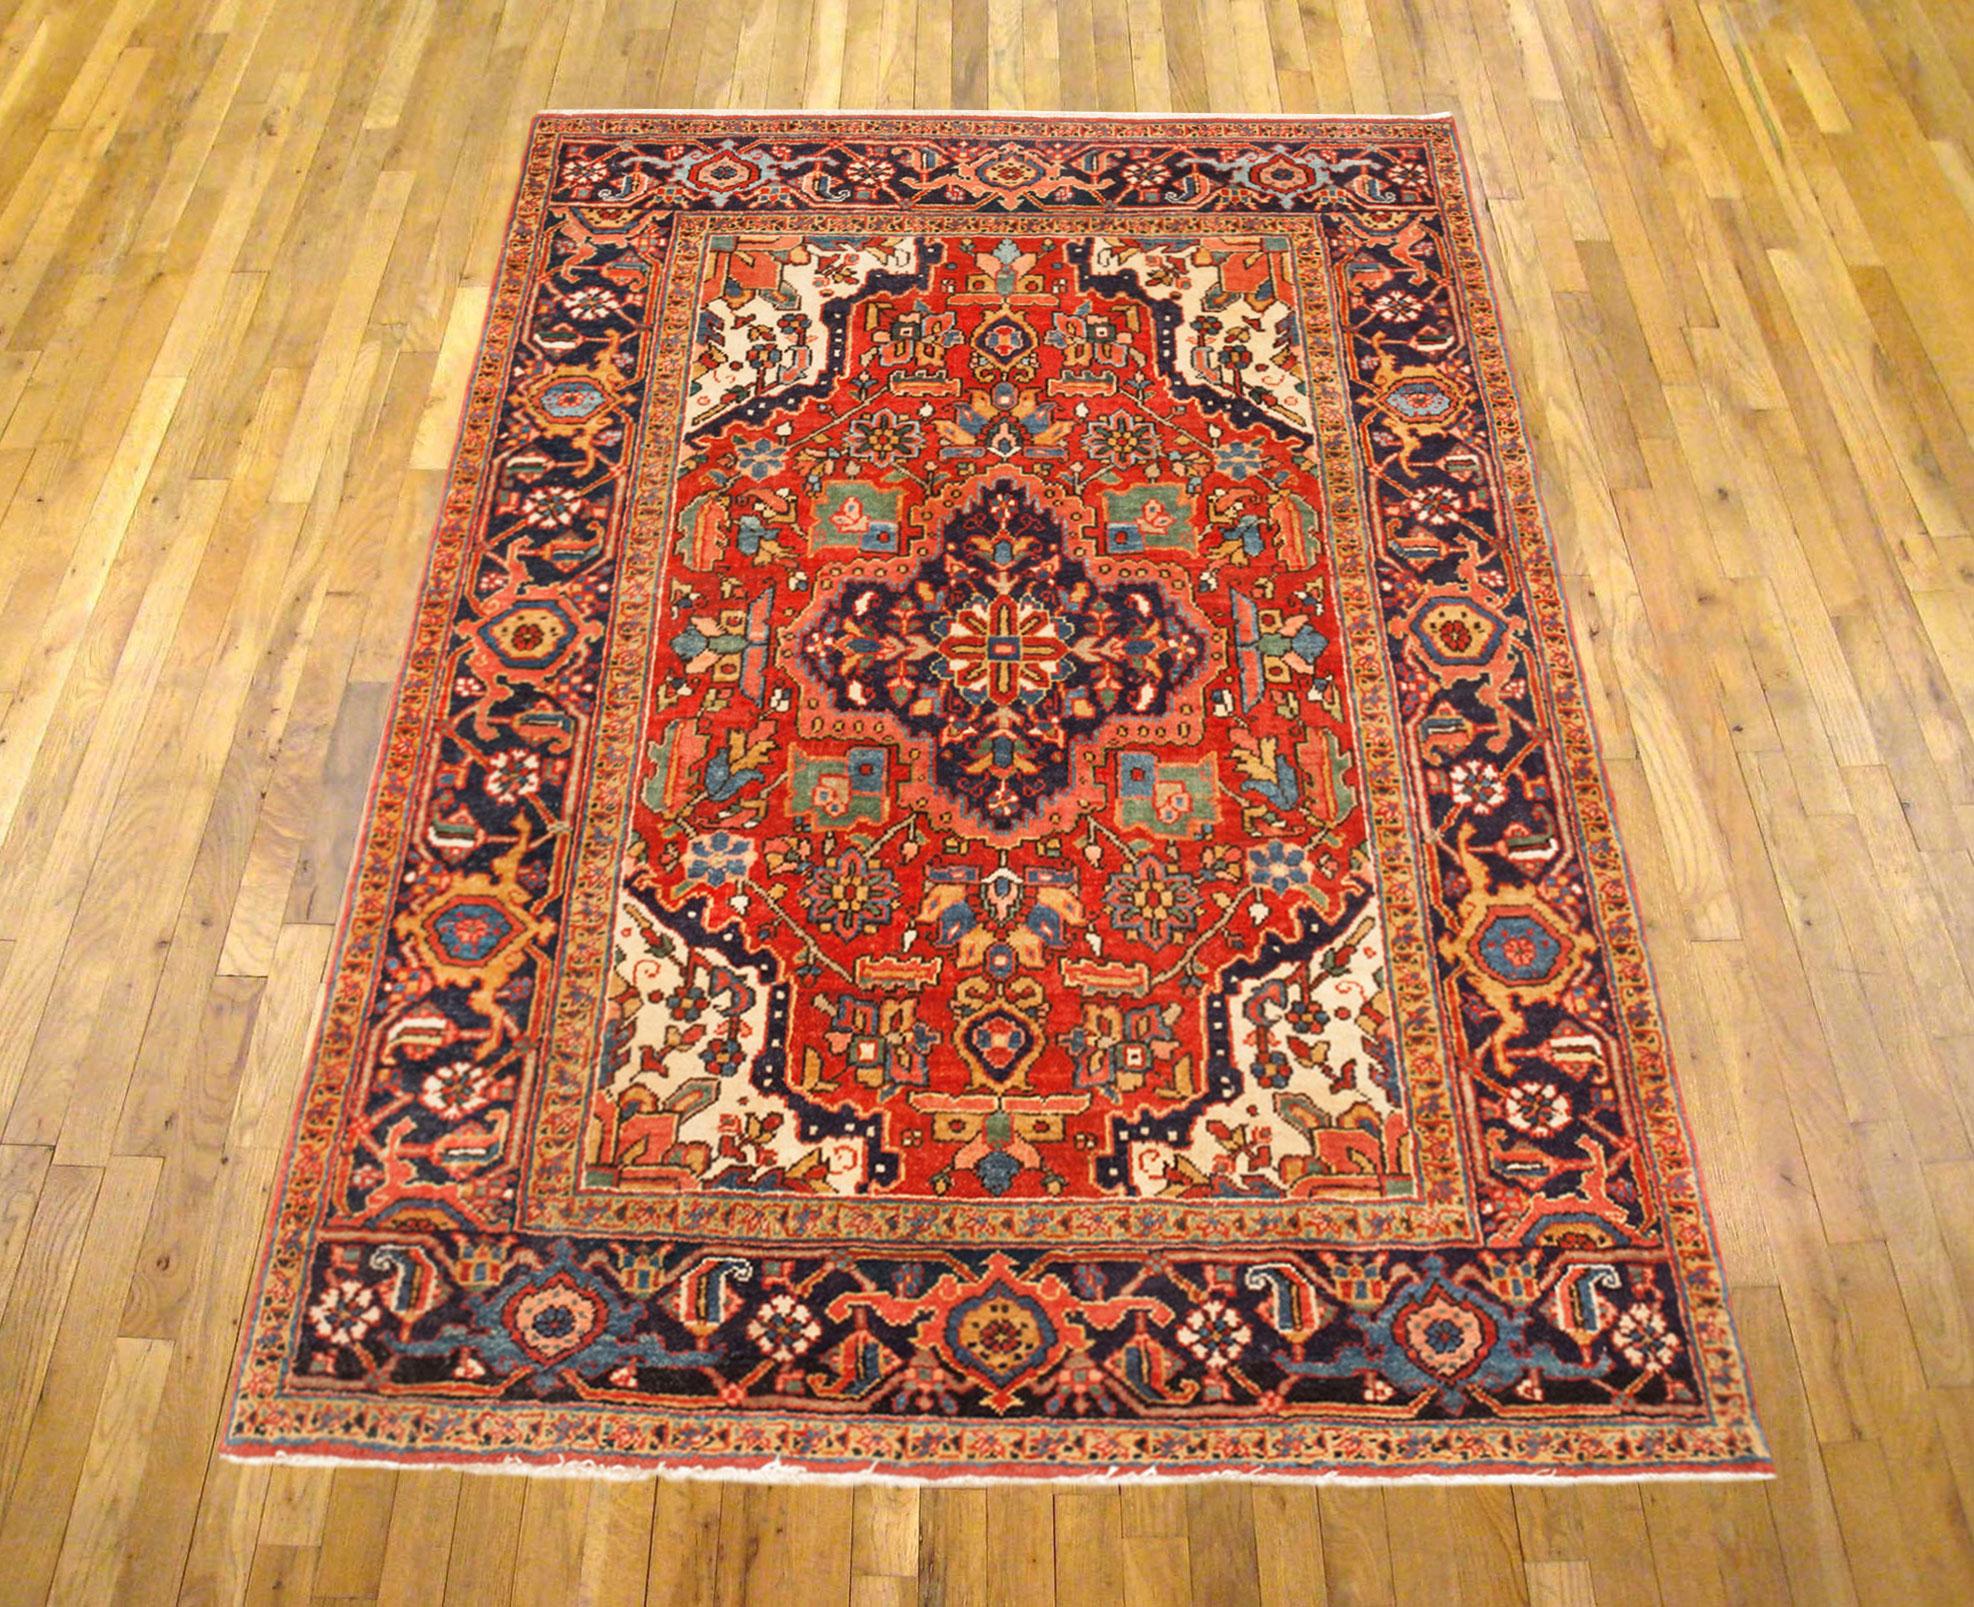 Vintage Persisch Heriz Orientteppich, Kleinformat

Ein Vintage Persian Heriz orientalischen Teppich, Größe 5'8